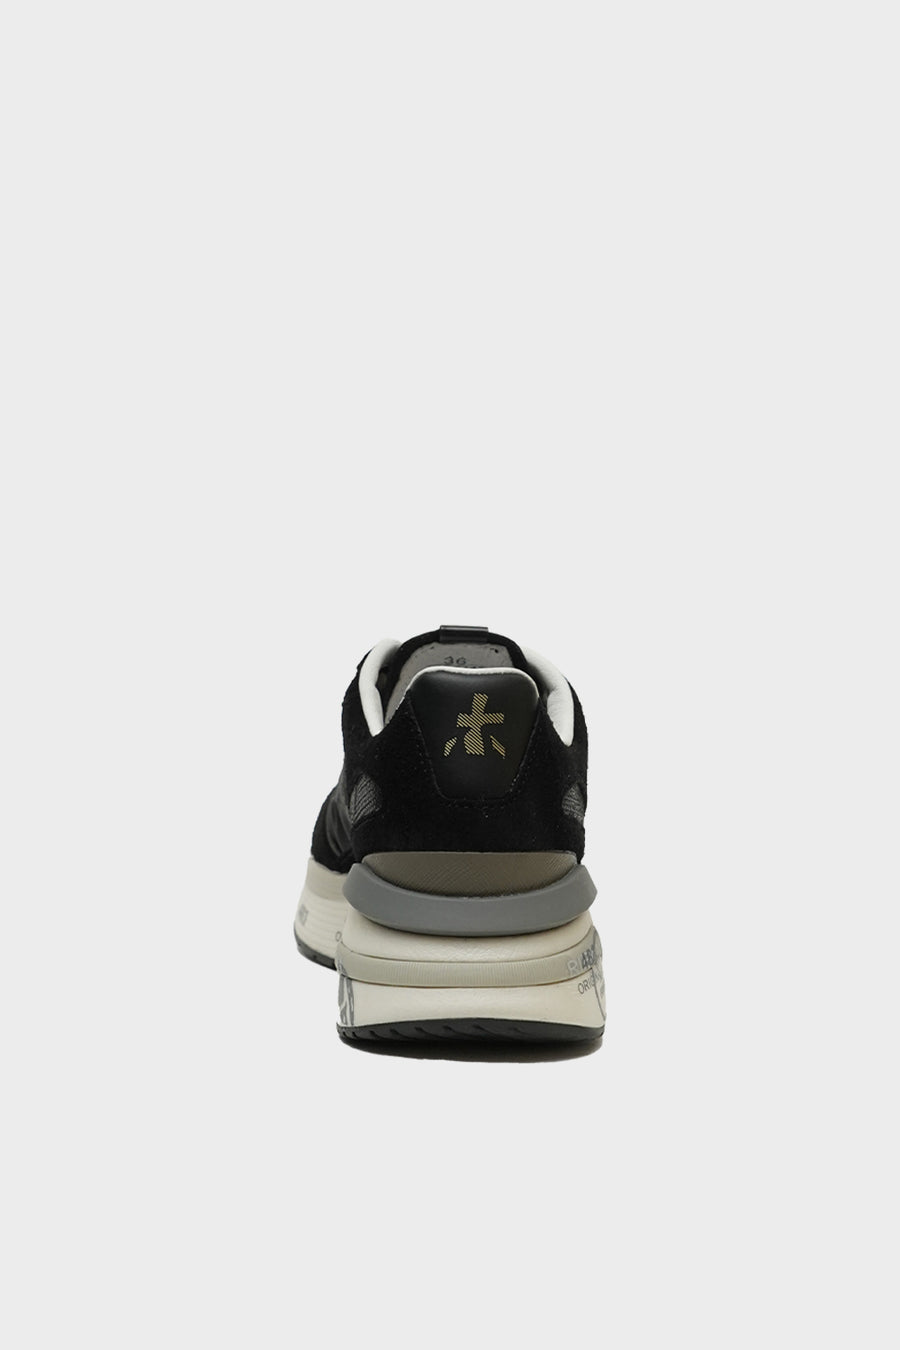 Sneakers Premiata in camoscio e tessuto nero  MOERUND 6443